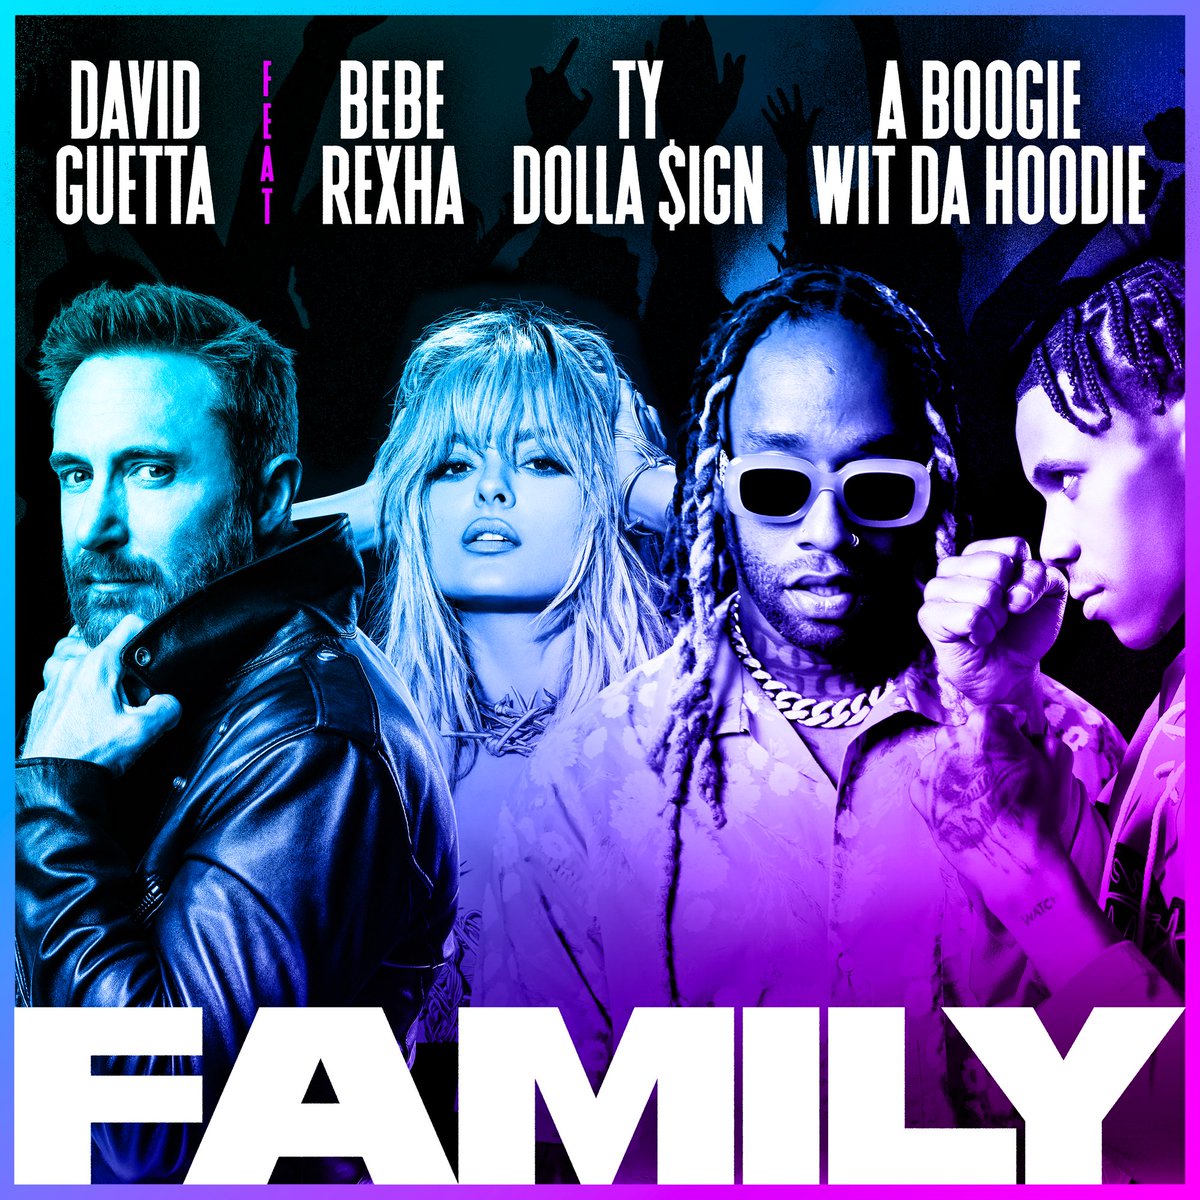 Add it to your playlist! Bebe Rexha și David Guetta au lansat Family, piesă la care a lucrat și un român